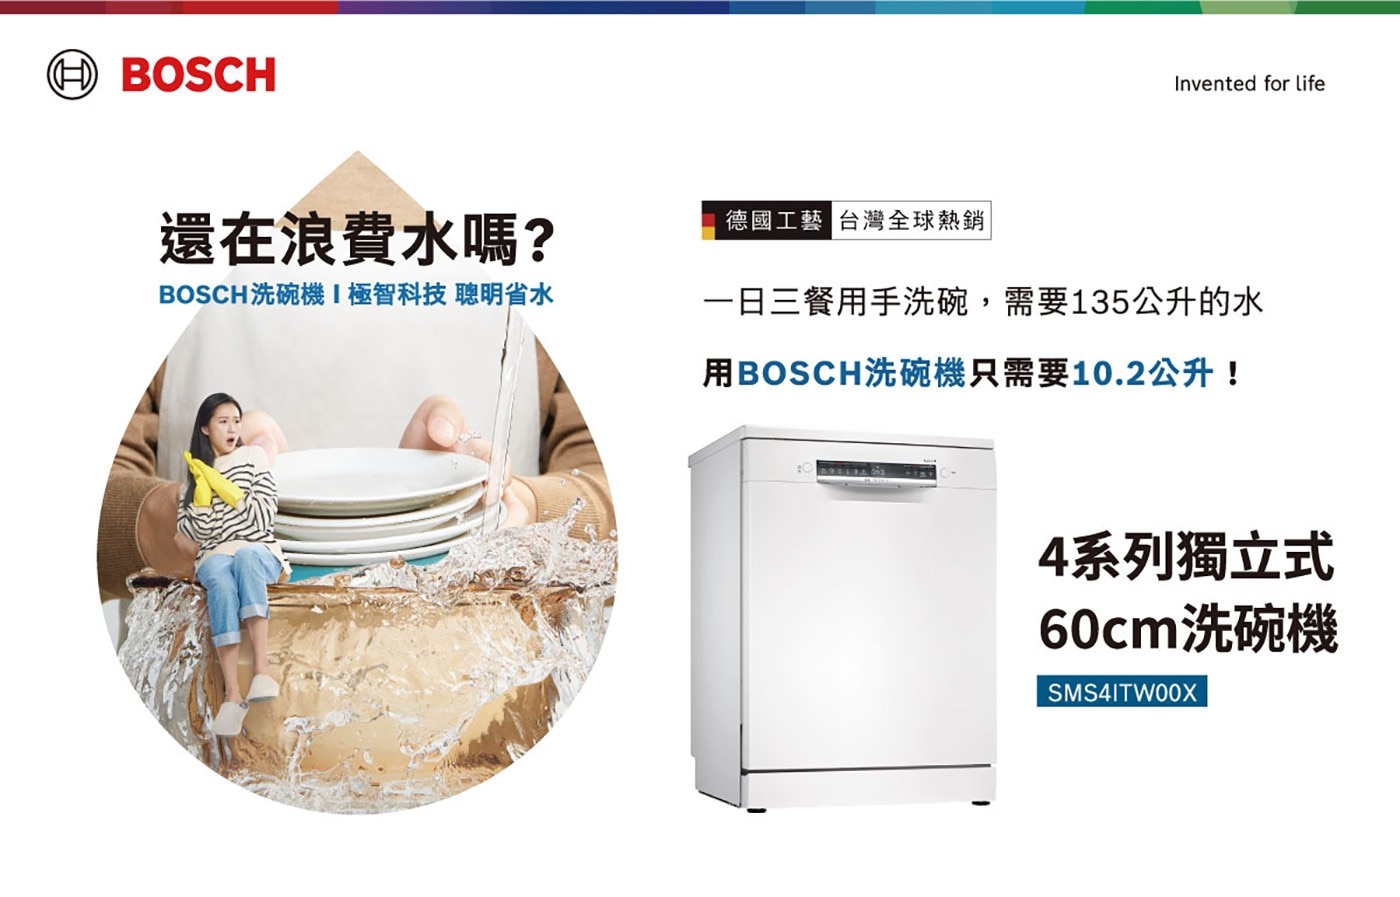 BOSCH 60CM 獨立式洗碗機 SMS4ITW00X 產品敘述